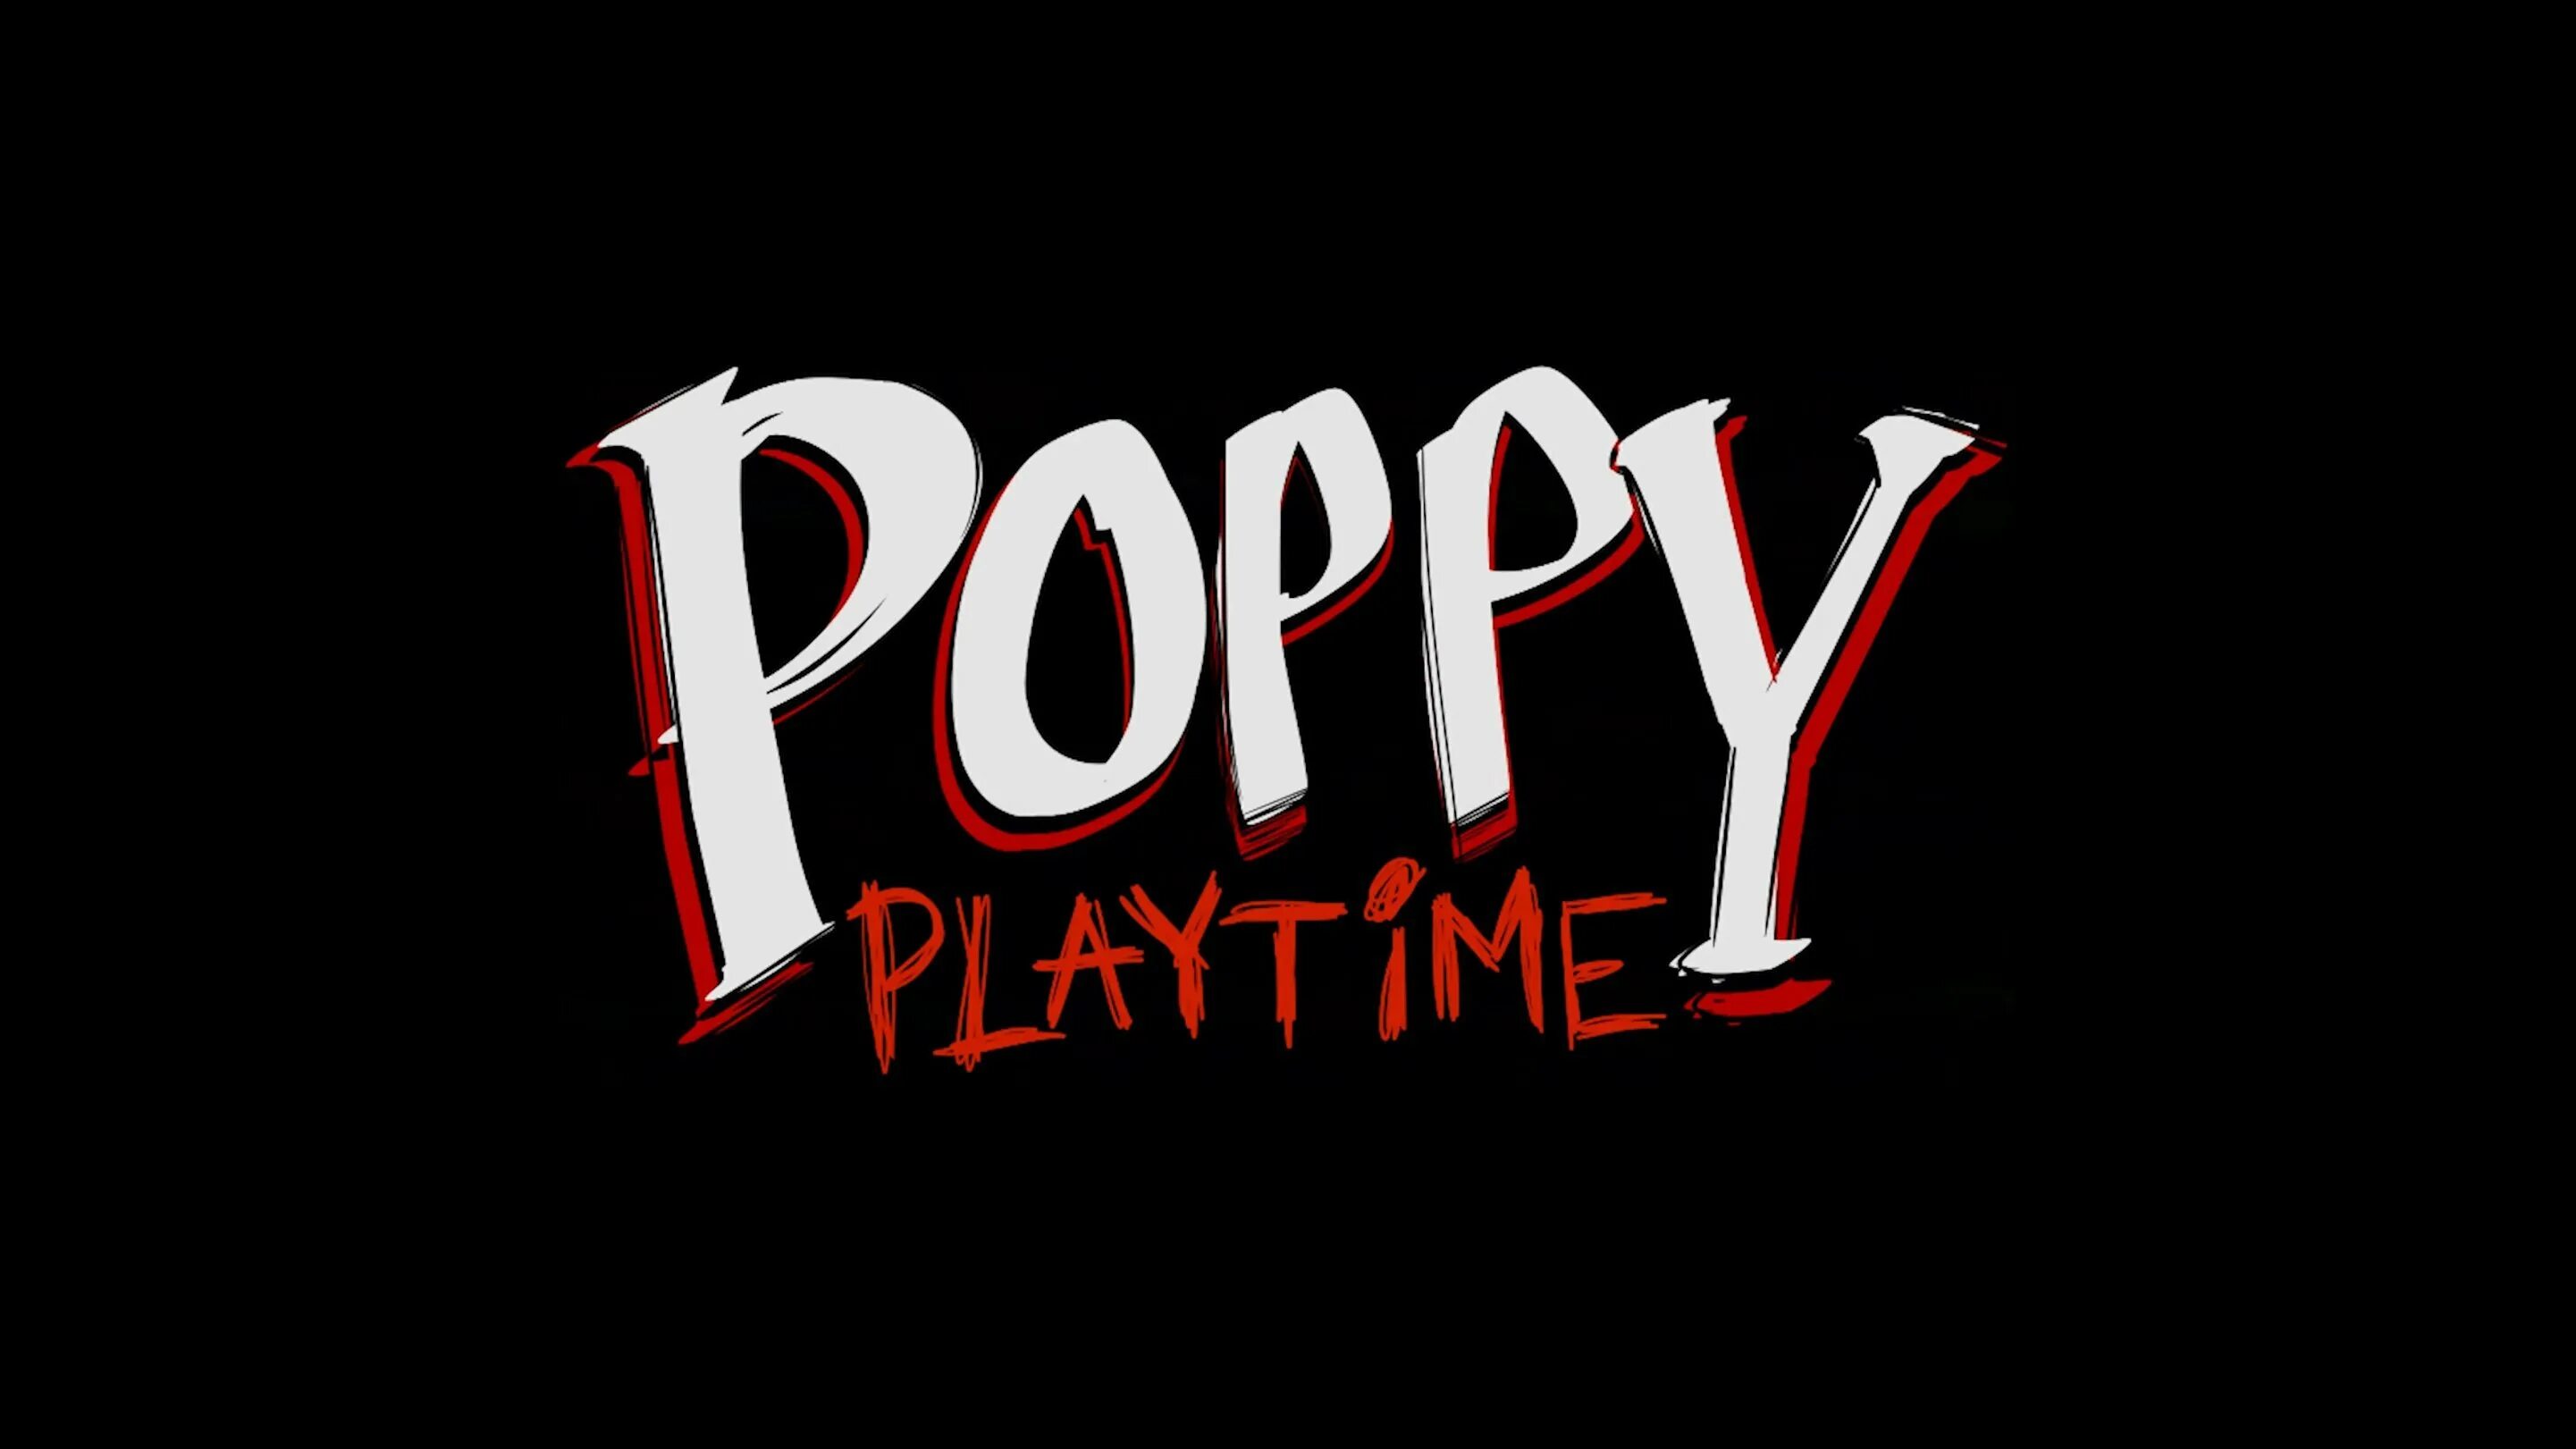 Poppy Playtime. Poppy Playtime надпись. Poppy Playtime 2 надпись. Poppy Playtime 1. Русификатор poppy playtime 2